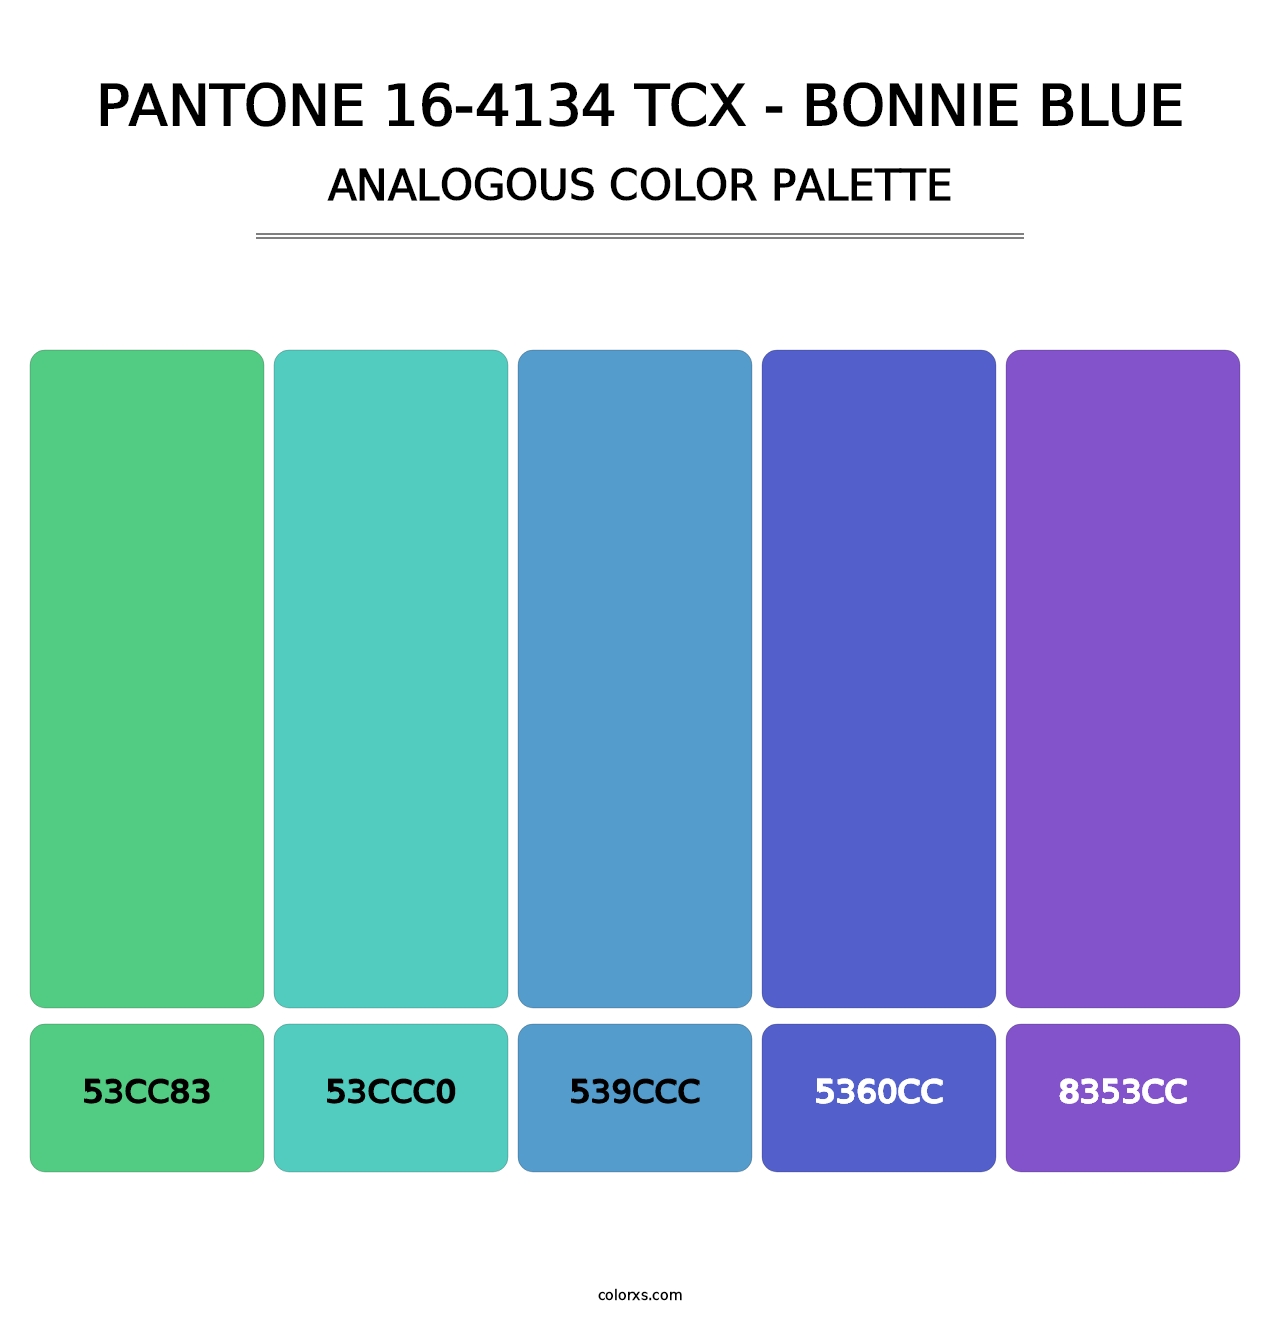 PANTONE 16-4134 TCX - Bonnie Blue - Analogous Color Palette